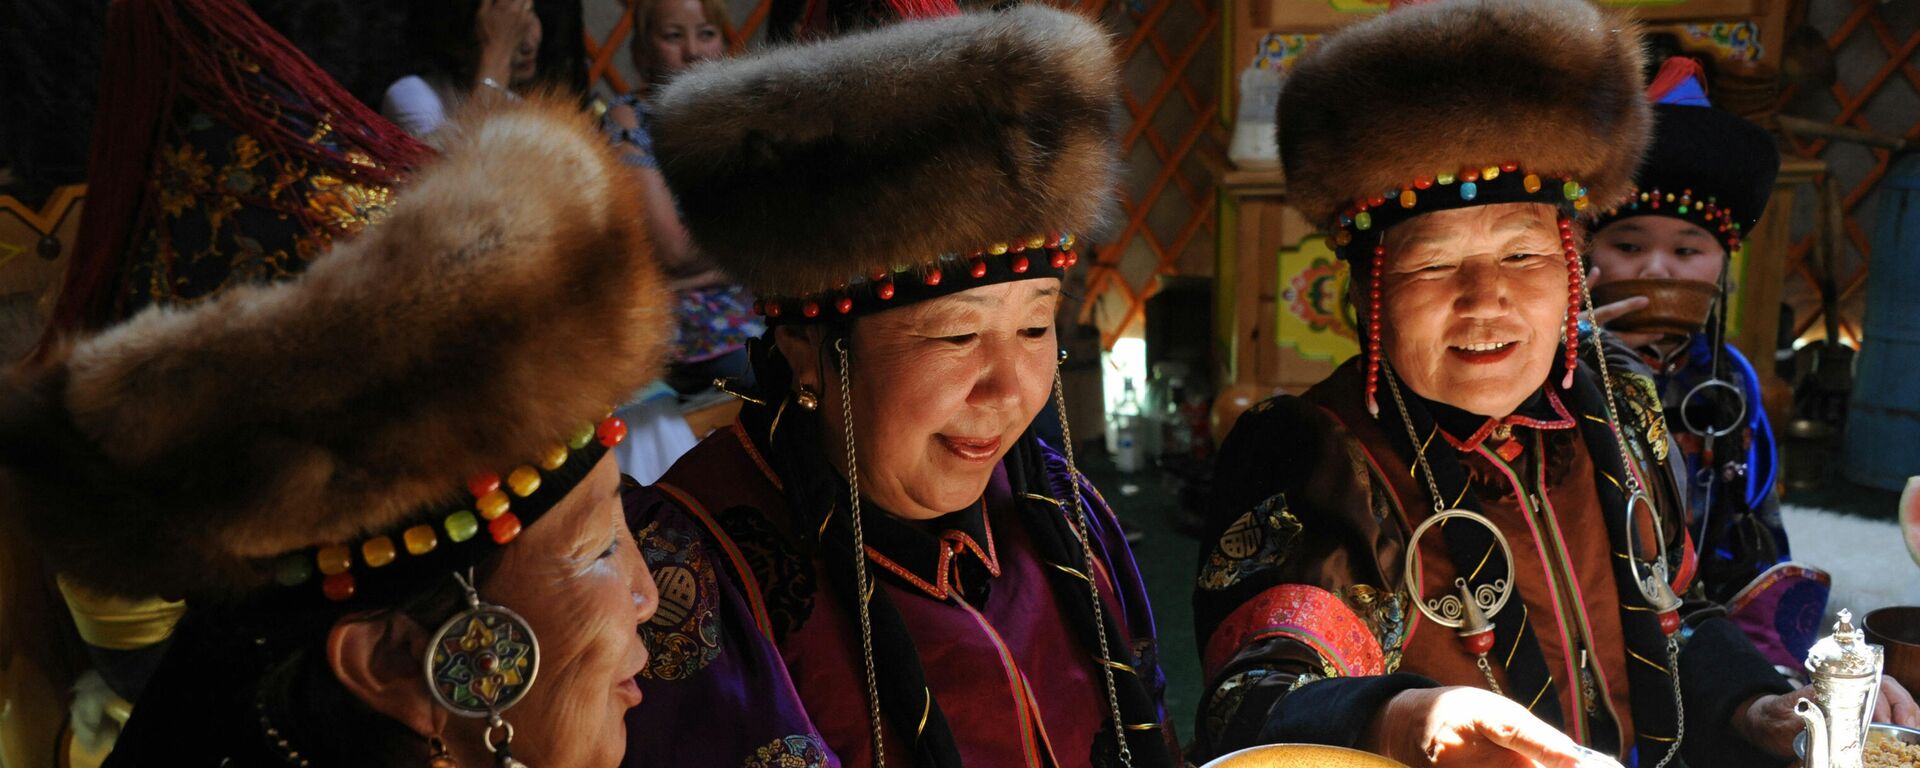 Mujeres preparan kumis en Mongolia - Sputnik Mundo, 1920, 26.03.2021